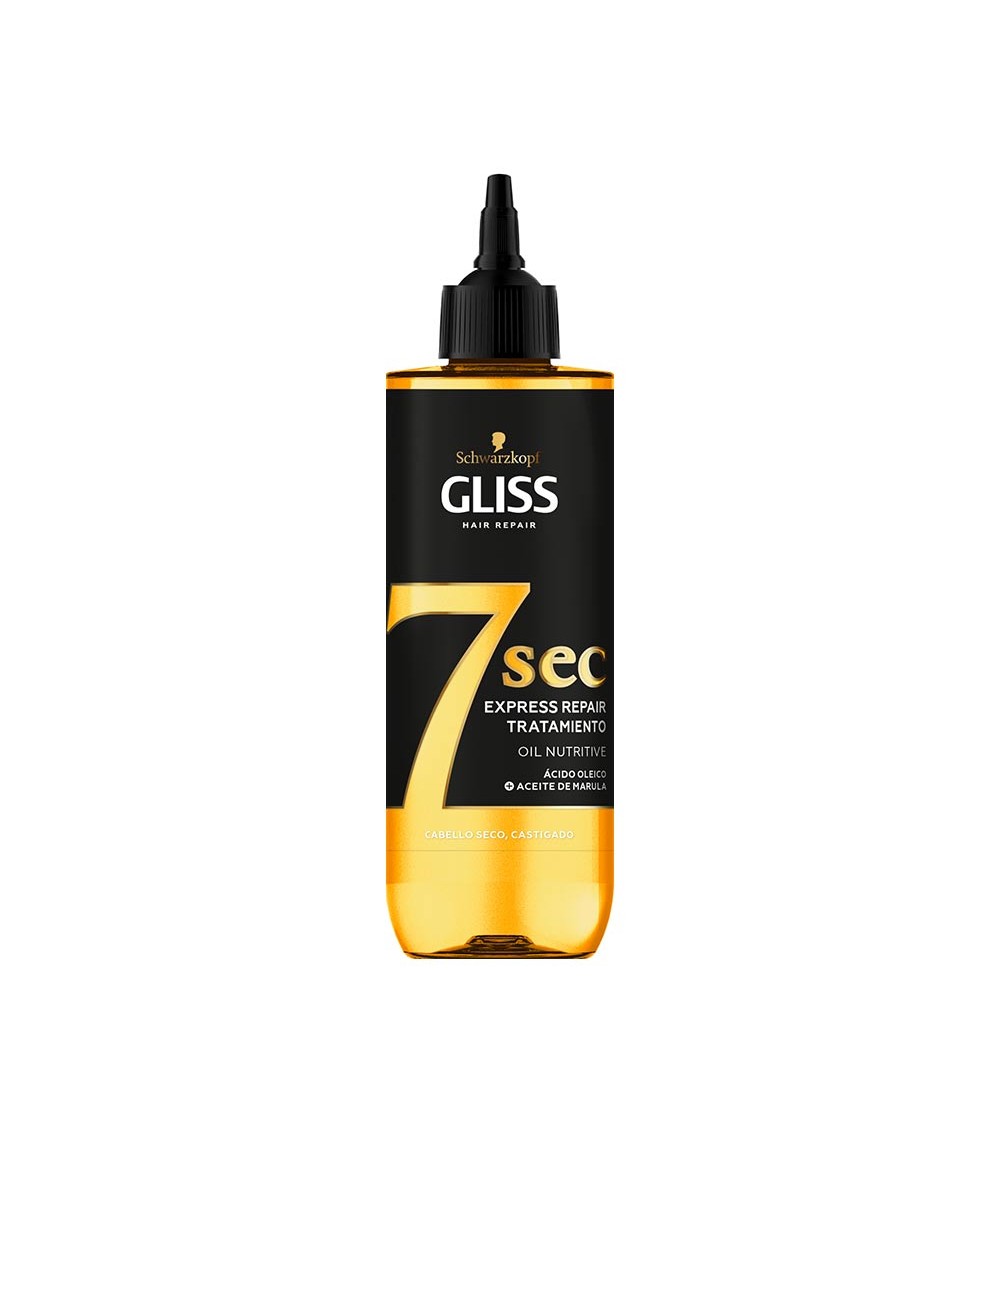 GLISS 7 SEC traitement réparateur express à l’huile nutritive 200 ml